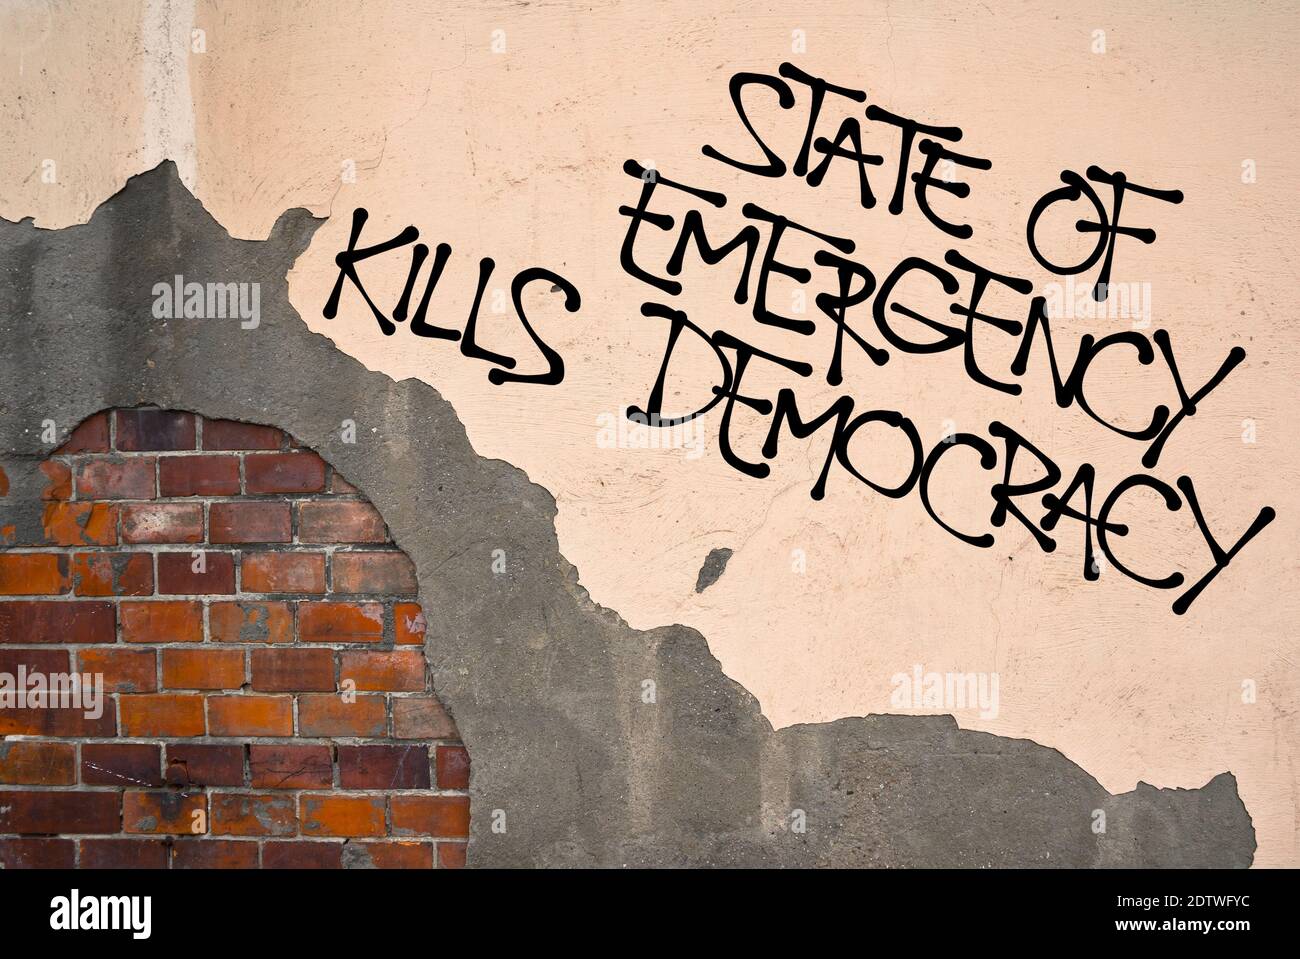 Lo stato di emergenza uccide la democrazia - graffiti scritti a mano spruzzati sul muro, estetica anarchica - soppressione del diritto a causa di minaccia o di crisi. Foto Stock